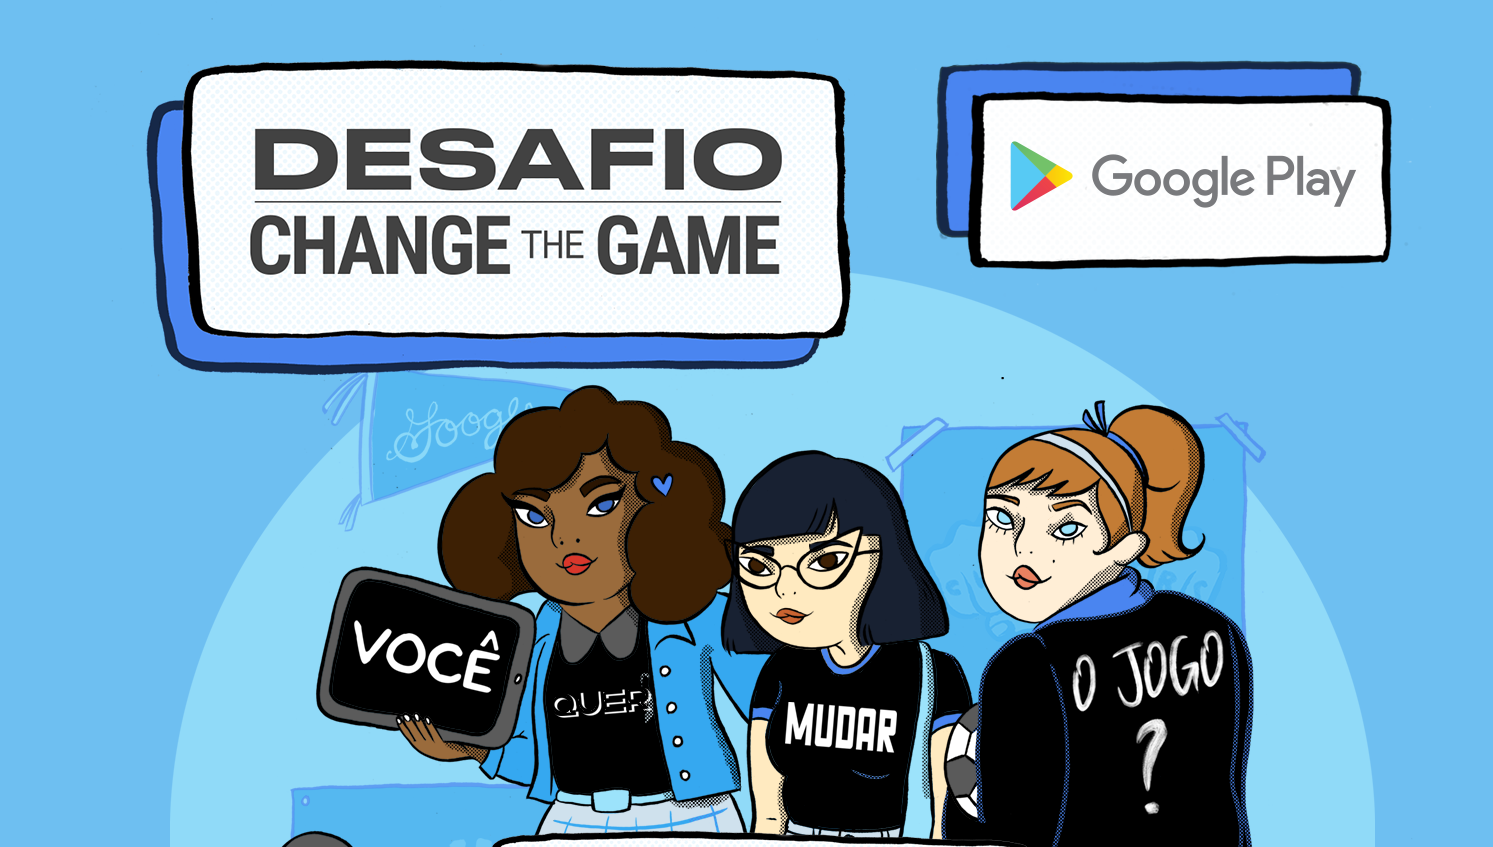 Por dentro do marketing do Google: como estamos fortalecendo a  representatividade feminina no mundo dos games